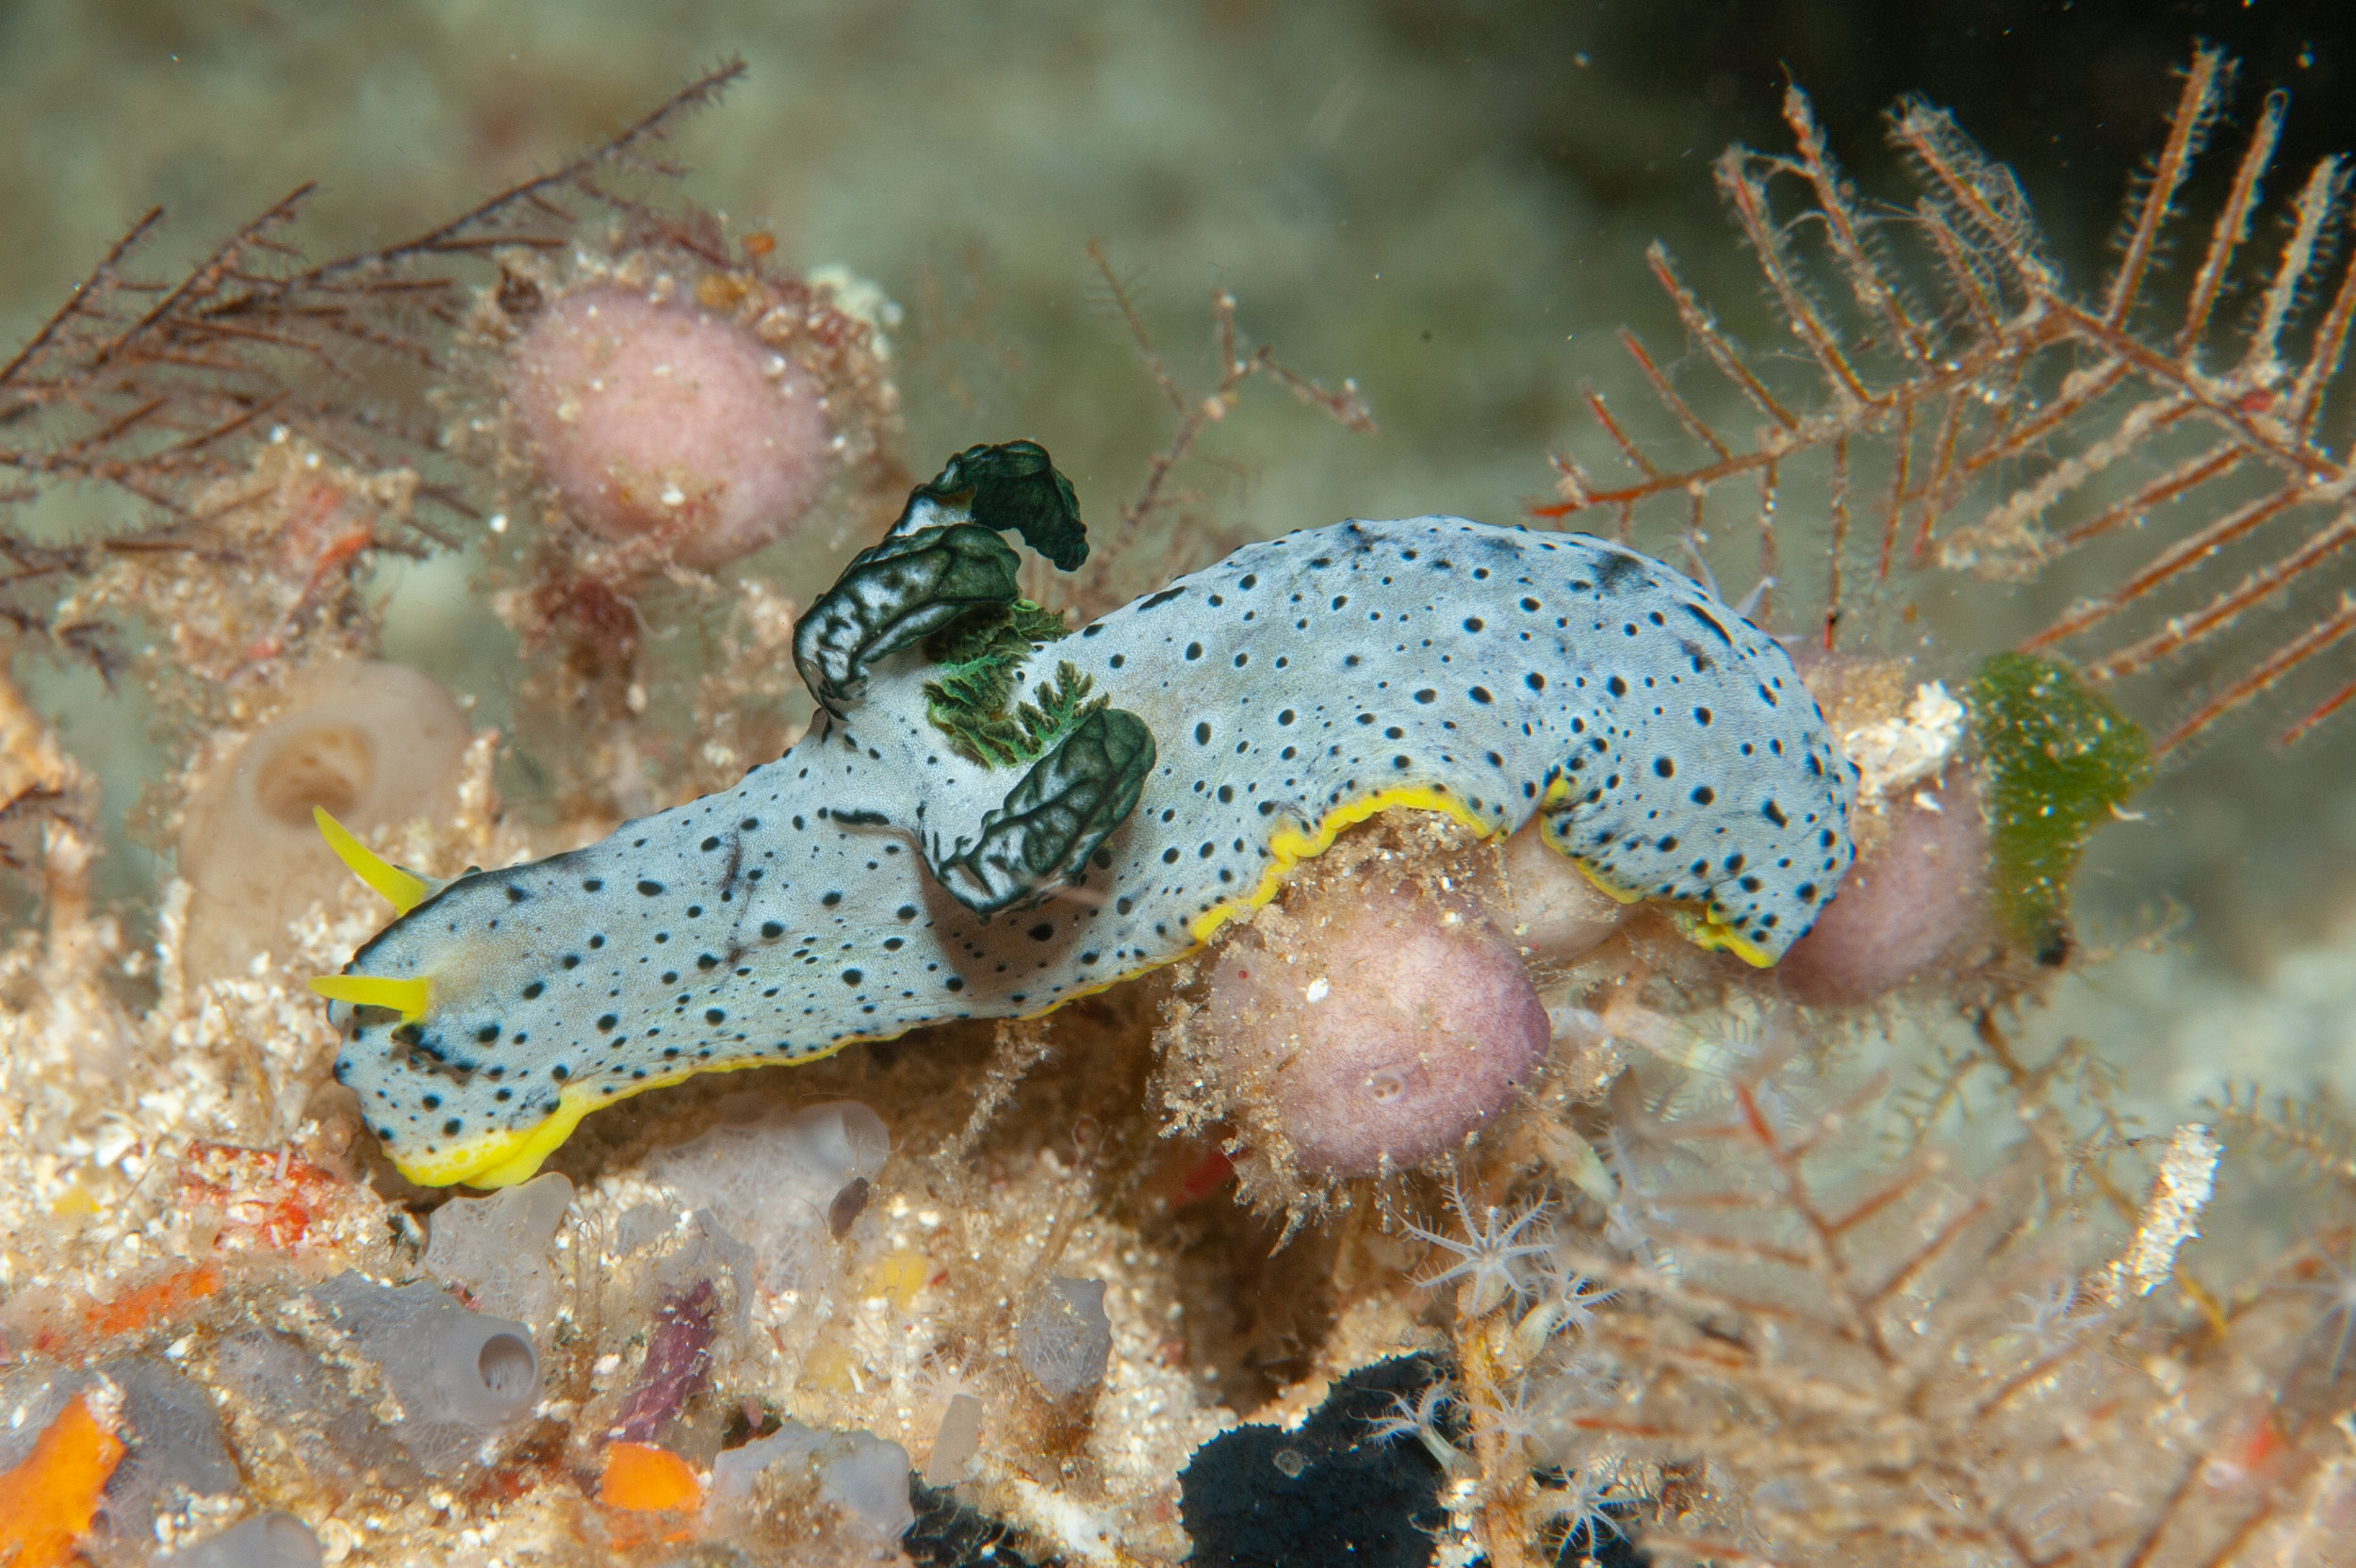 Aegires serenae nudibranch, Goru Arches, Witu Islands